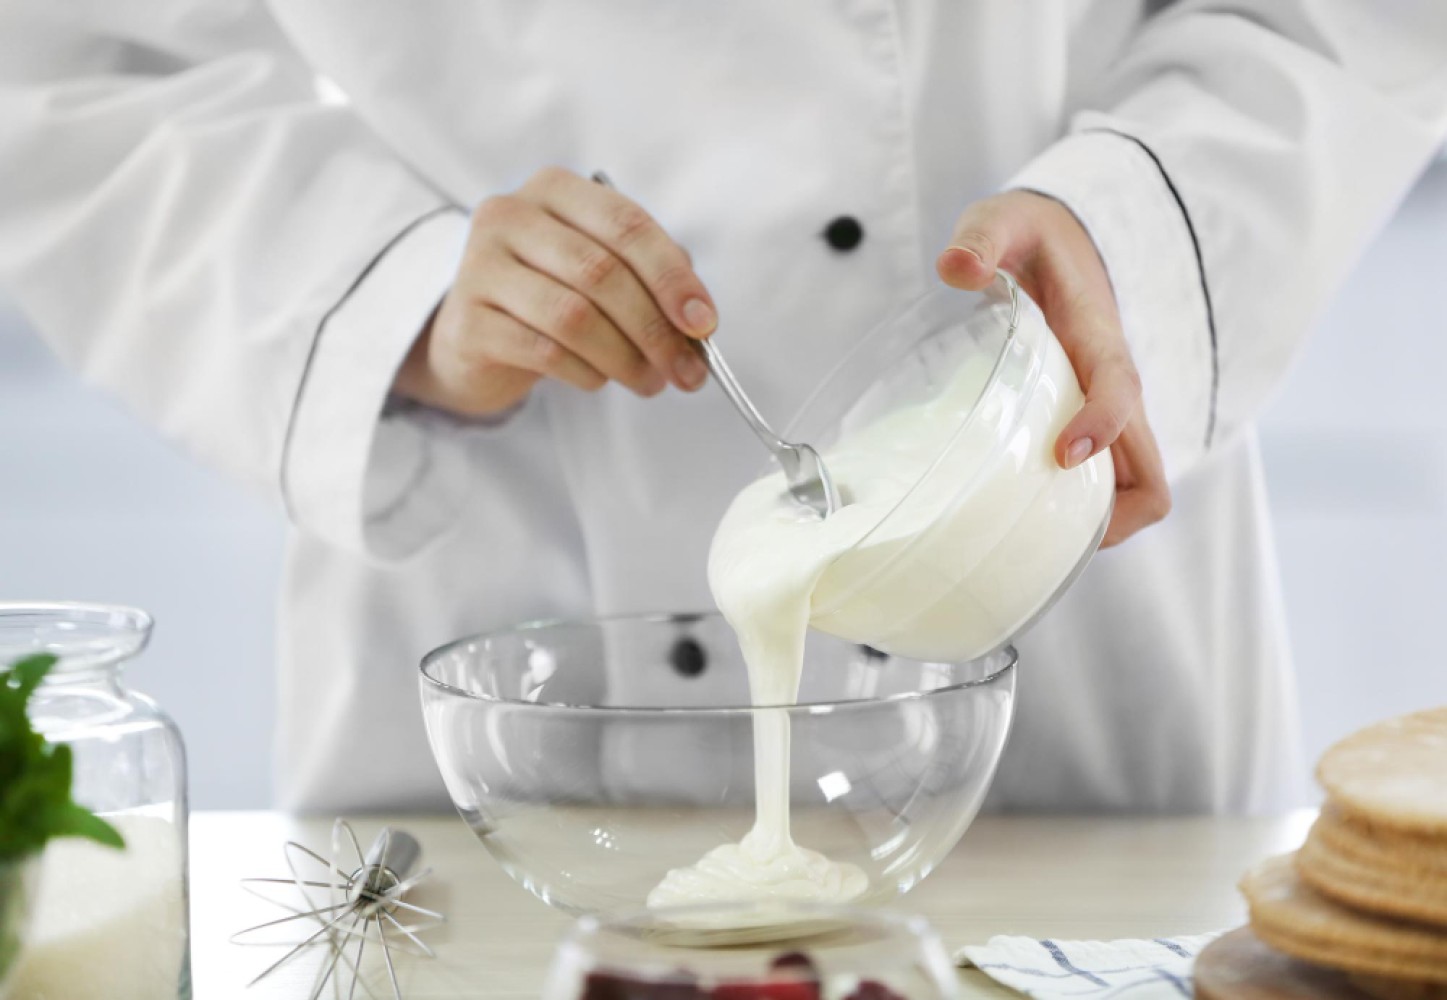 Каждый кондитер знает, насколько важны молочные продукты для создания идеального десерта. Этот материал раскрывает специфику молочных продуктов, их разновидности и особенности применения в кондитерском искусстве.